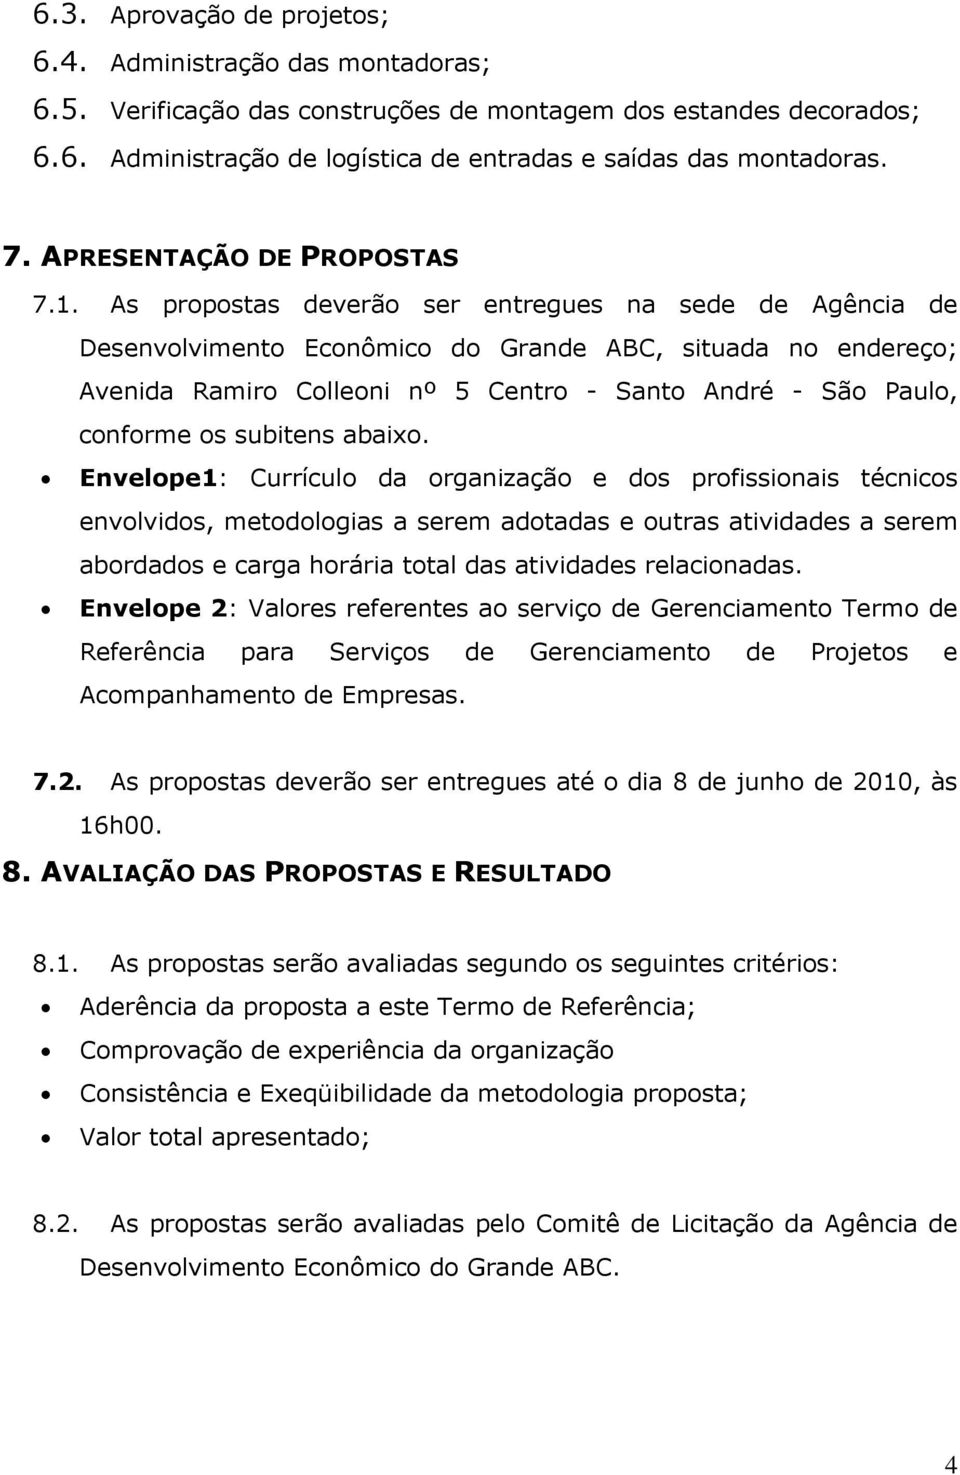 As propostas deverão ser entregues na sede de Agência de Desenvolvimento Econômico do Grande ABC, situada no endereço; Avenida Ramiro Colleoni nº 5 Centro - Santo André - São Paulo, conforme os